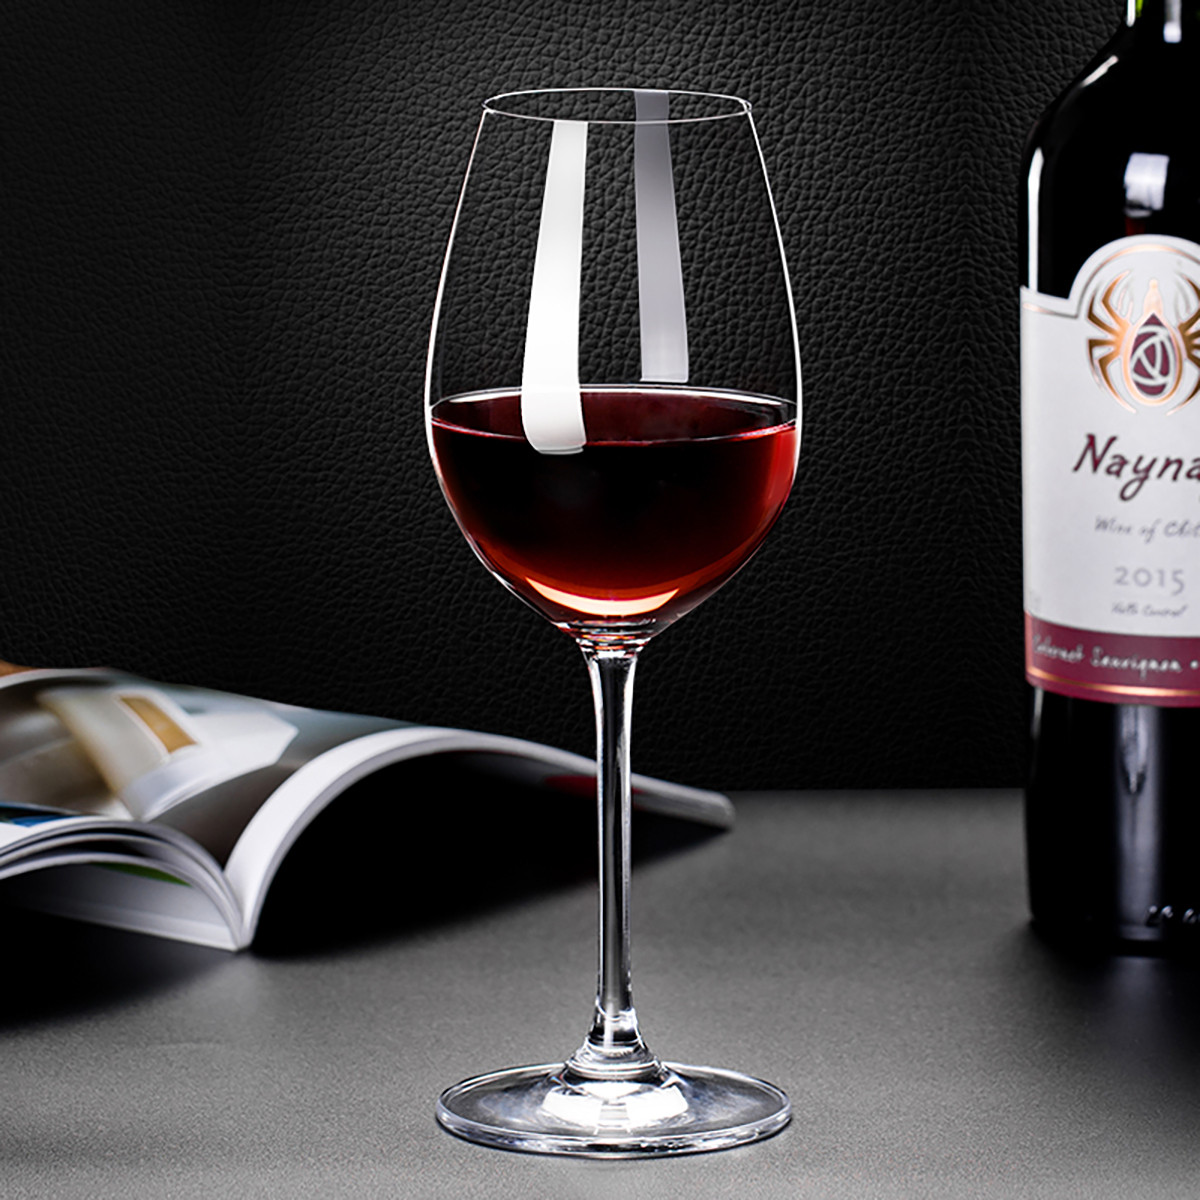 醒酒器6红酒杯法国葡萄酒原瓶价格质量 哪个牌子比较好